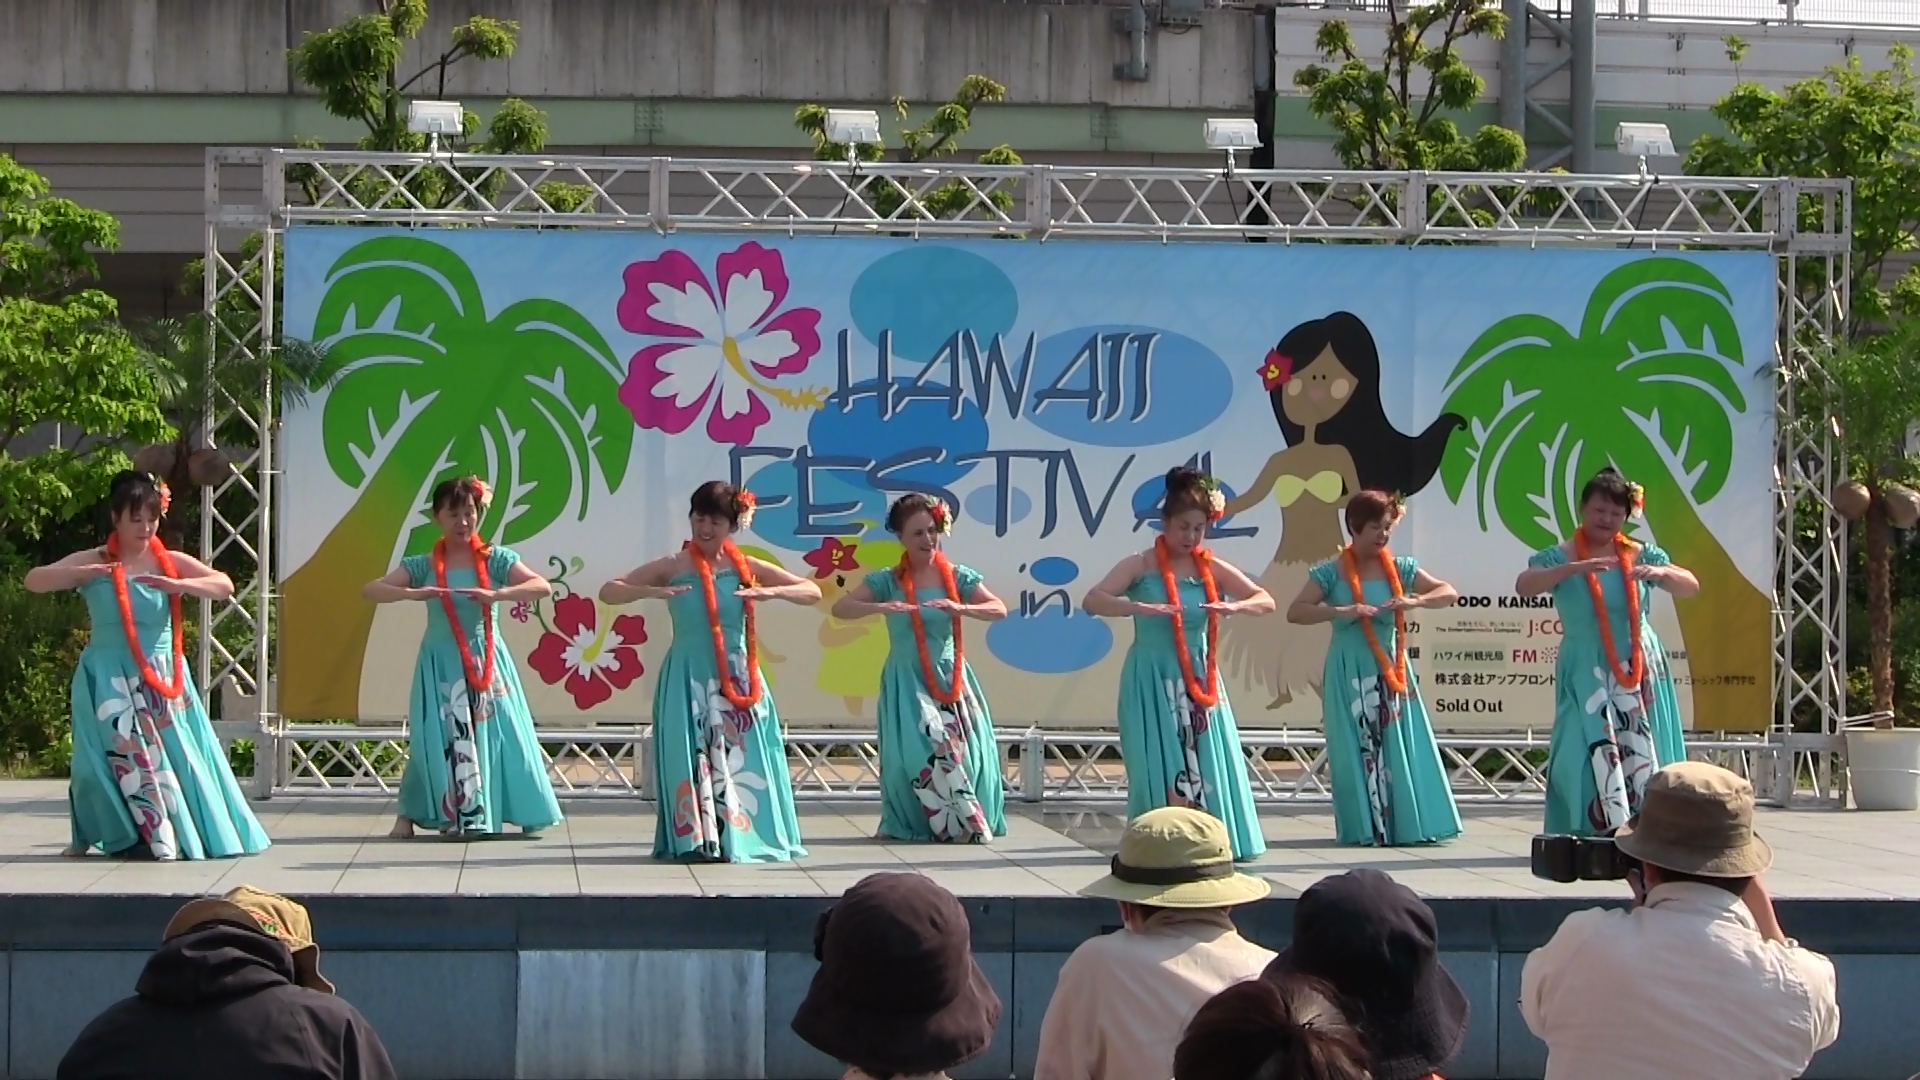 2013年4月27日(土) Hawaii Festival in OSAKA 2013